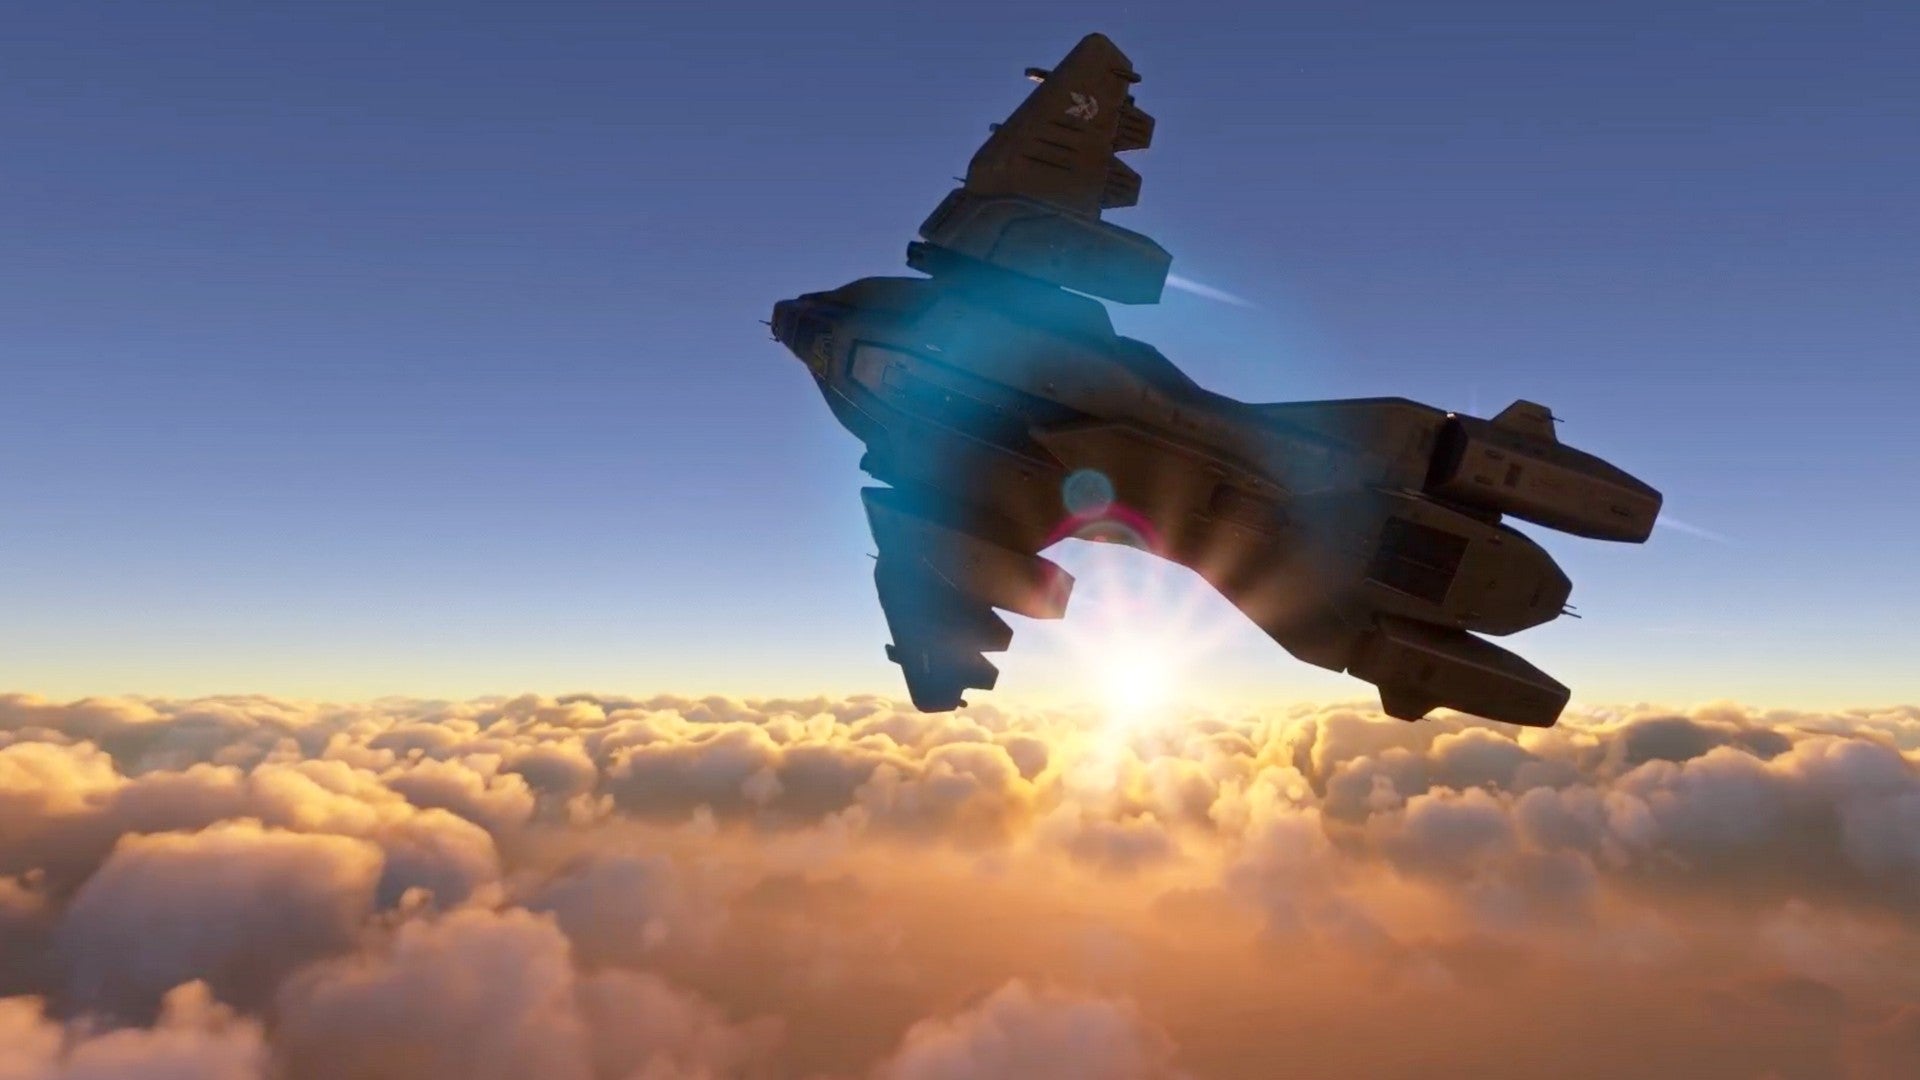 Bilder zu Flight Simulator: Halos Pelican ist eine schöne Spielerei, jetzt will ich mehr